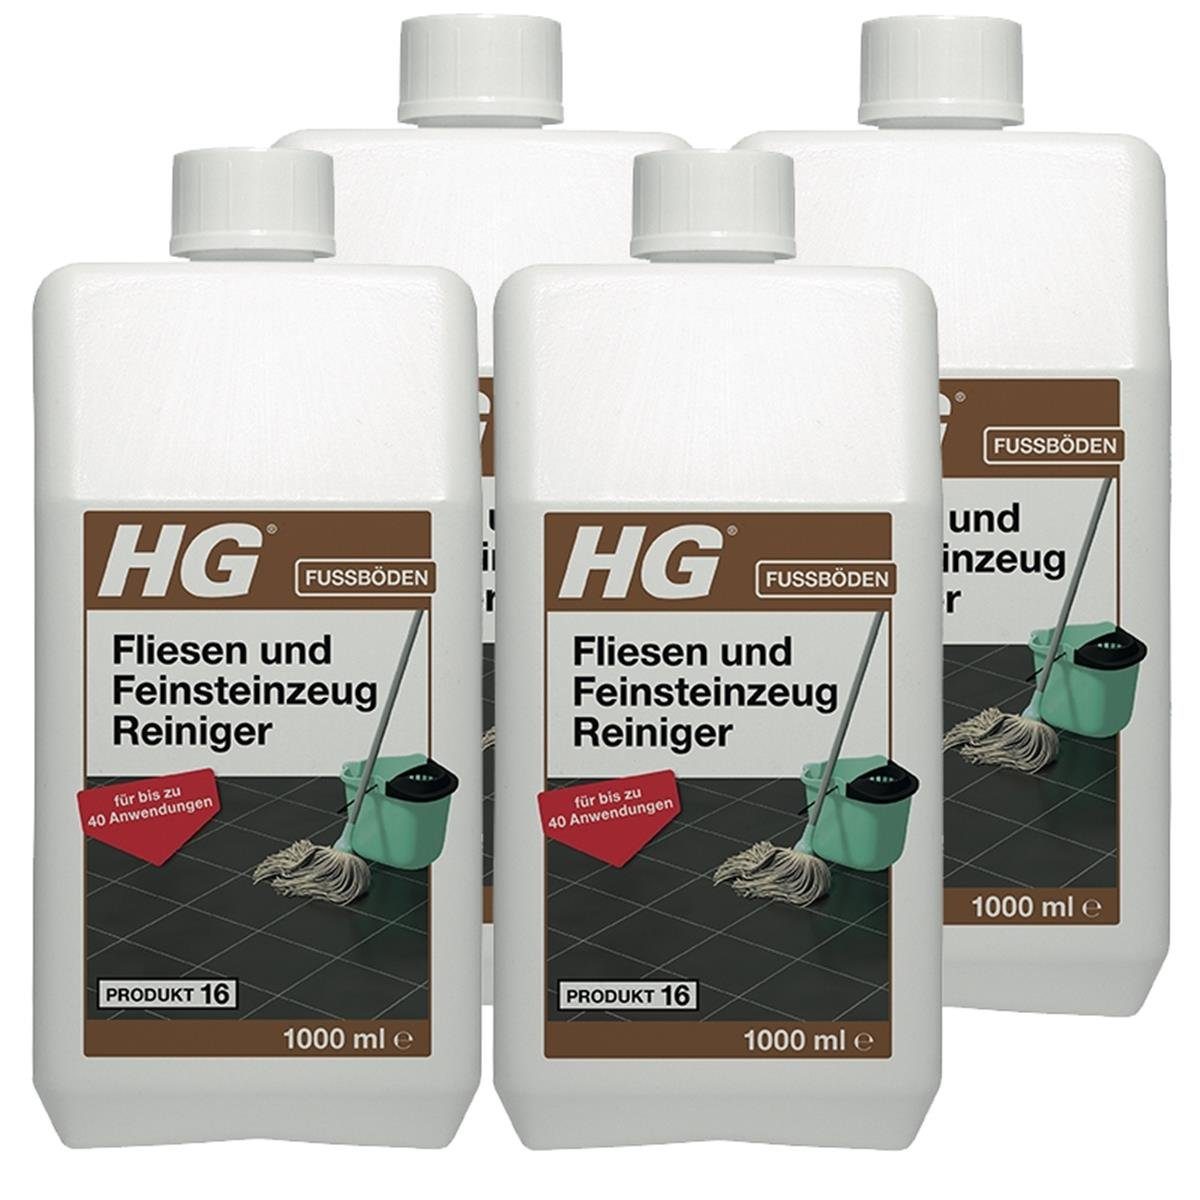 HG HG Fliesen und Feinsteinzeug Reiniger 1L (Produkt 16) (4er Pack)  Fussbodenreiniger